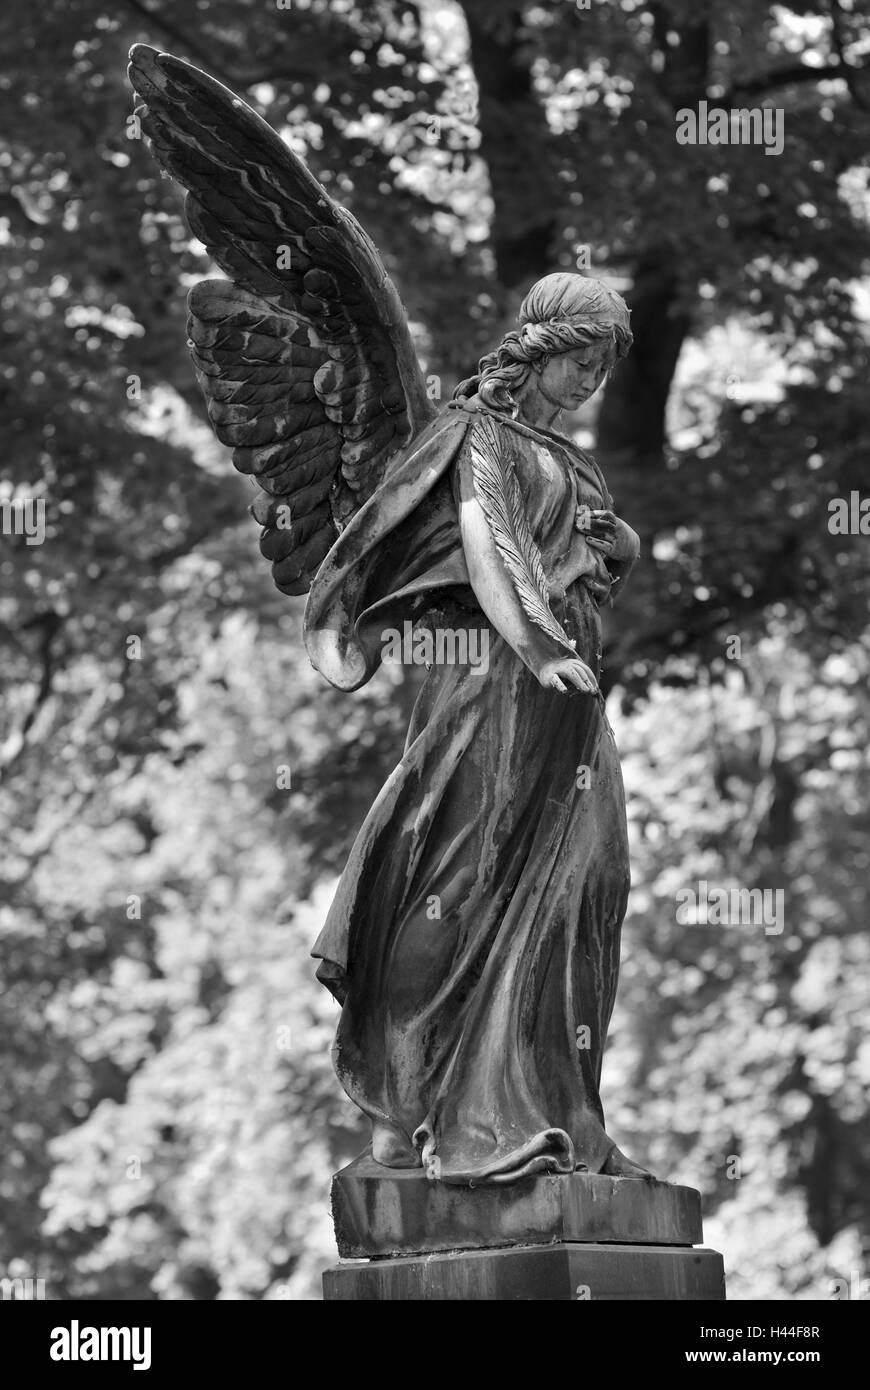 Engel, statue, chef, aile, arbre, branches, feuilles, b/w, Banque D'Images